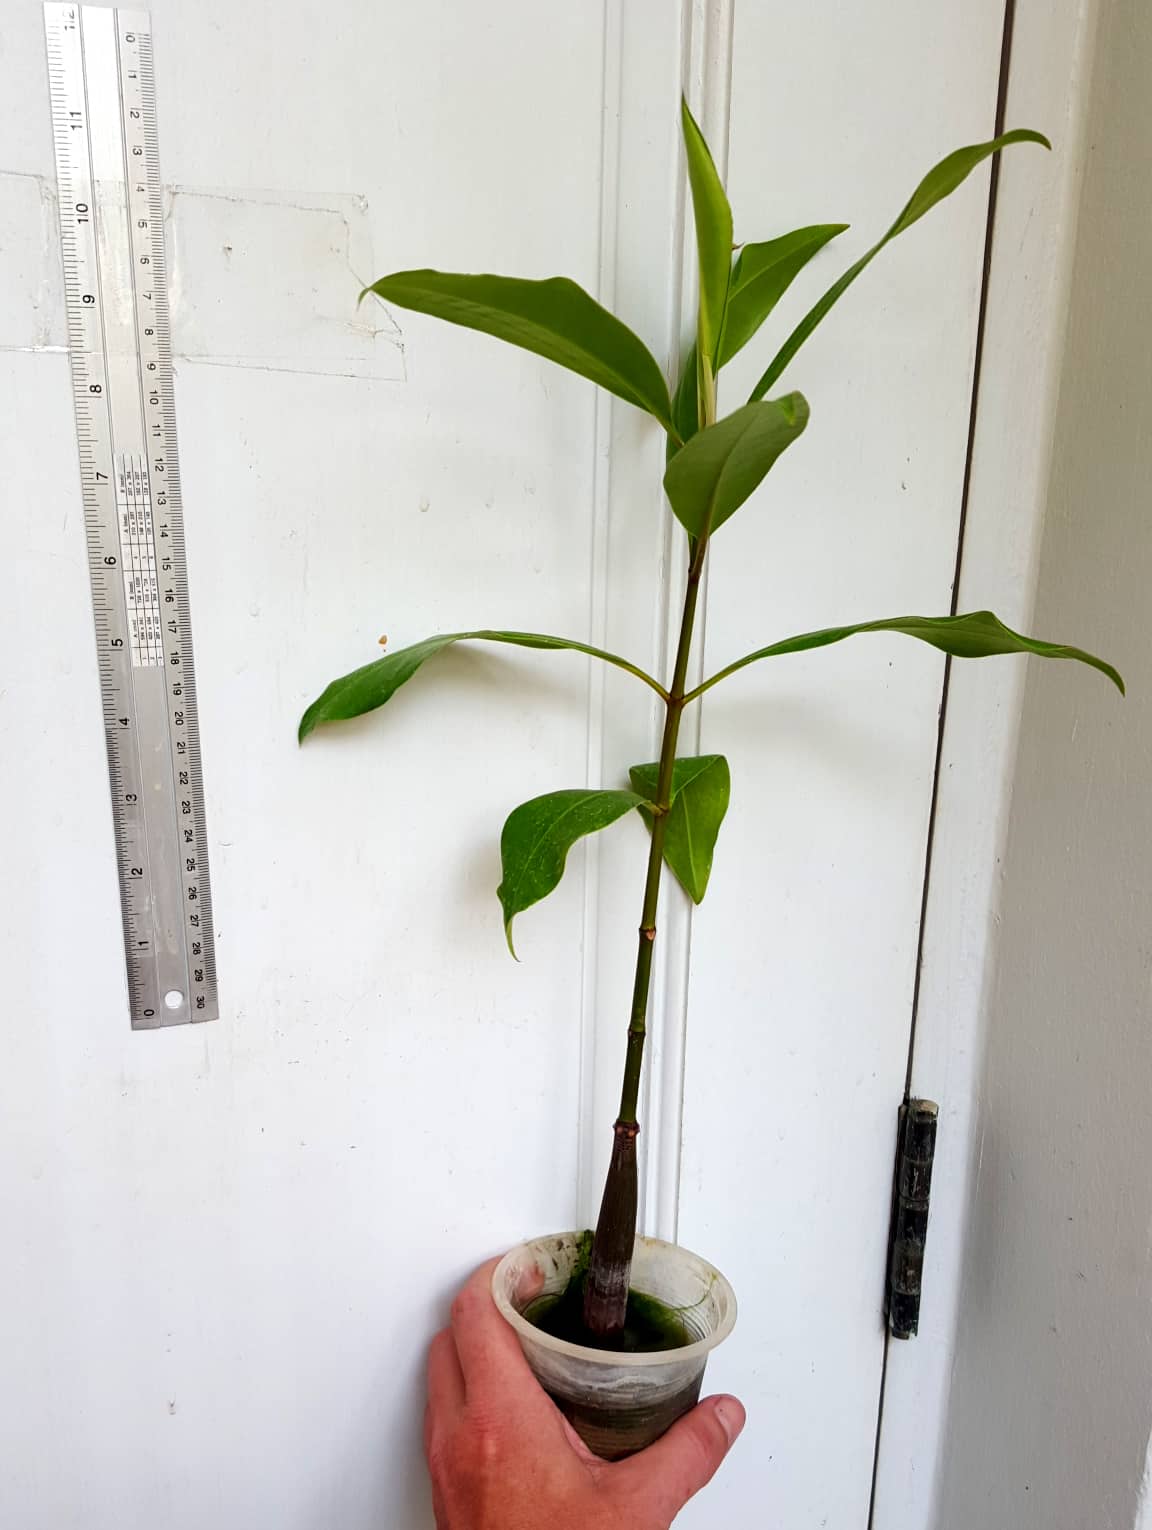 Buy Bruguiera gymnorhiza mangrove seedlings in online store